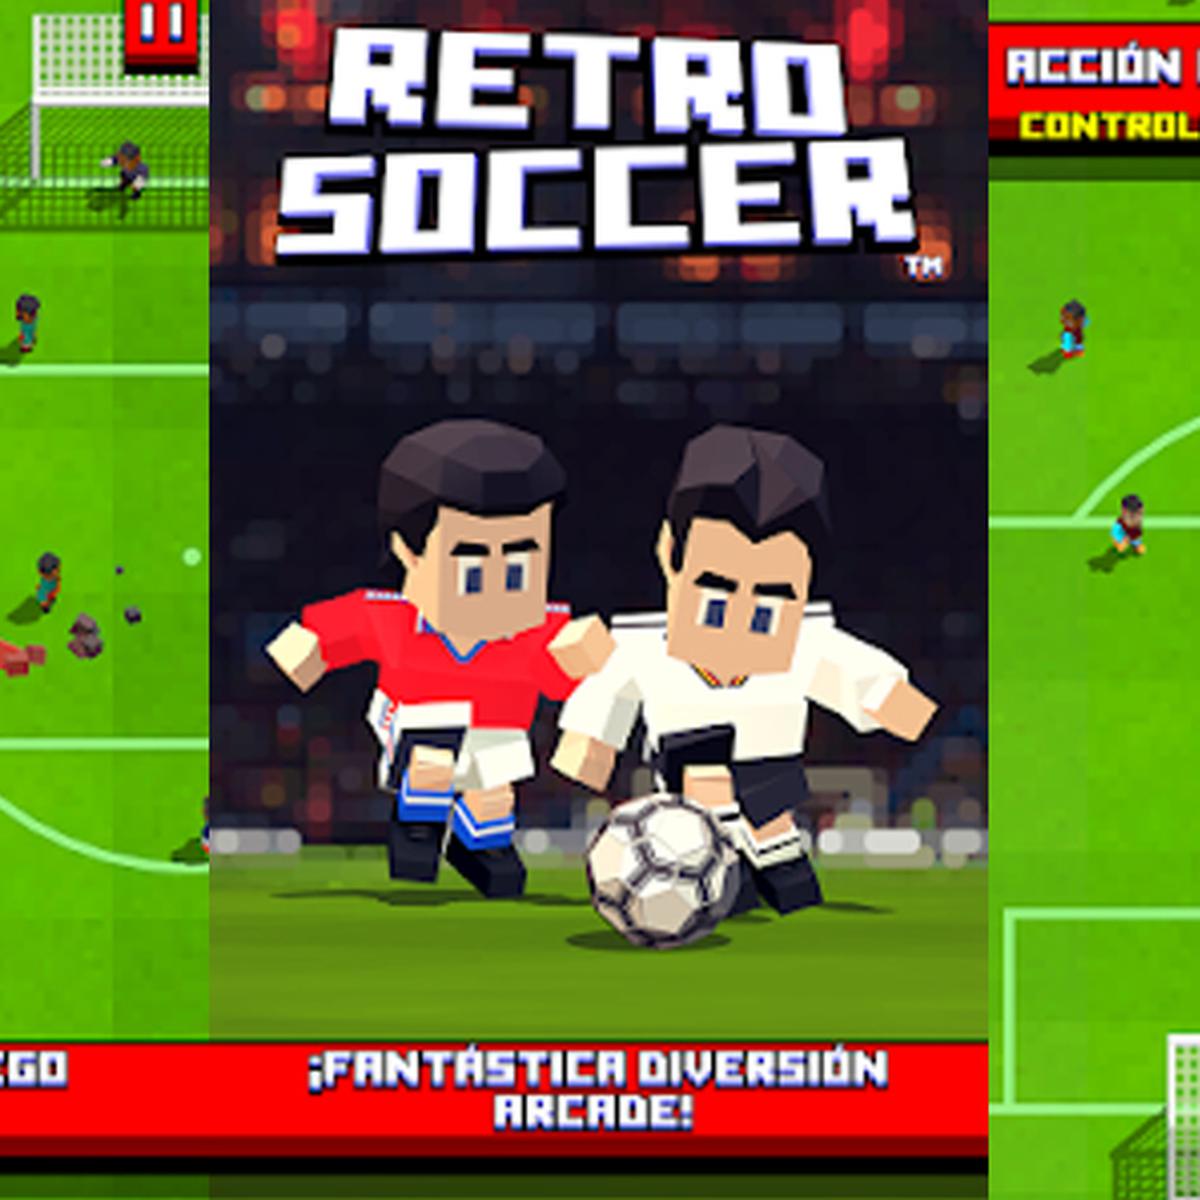 Juegos de futbol desconectada - Apps en Google Play